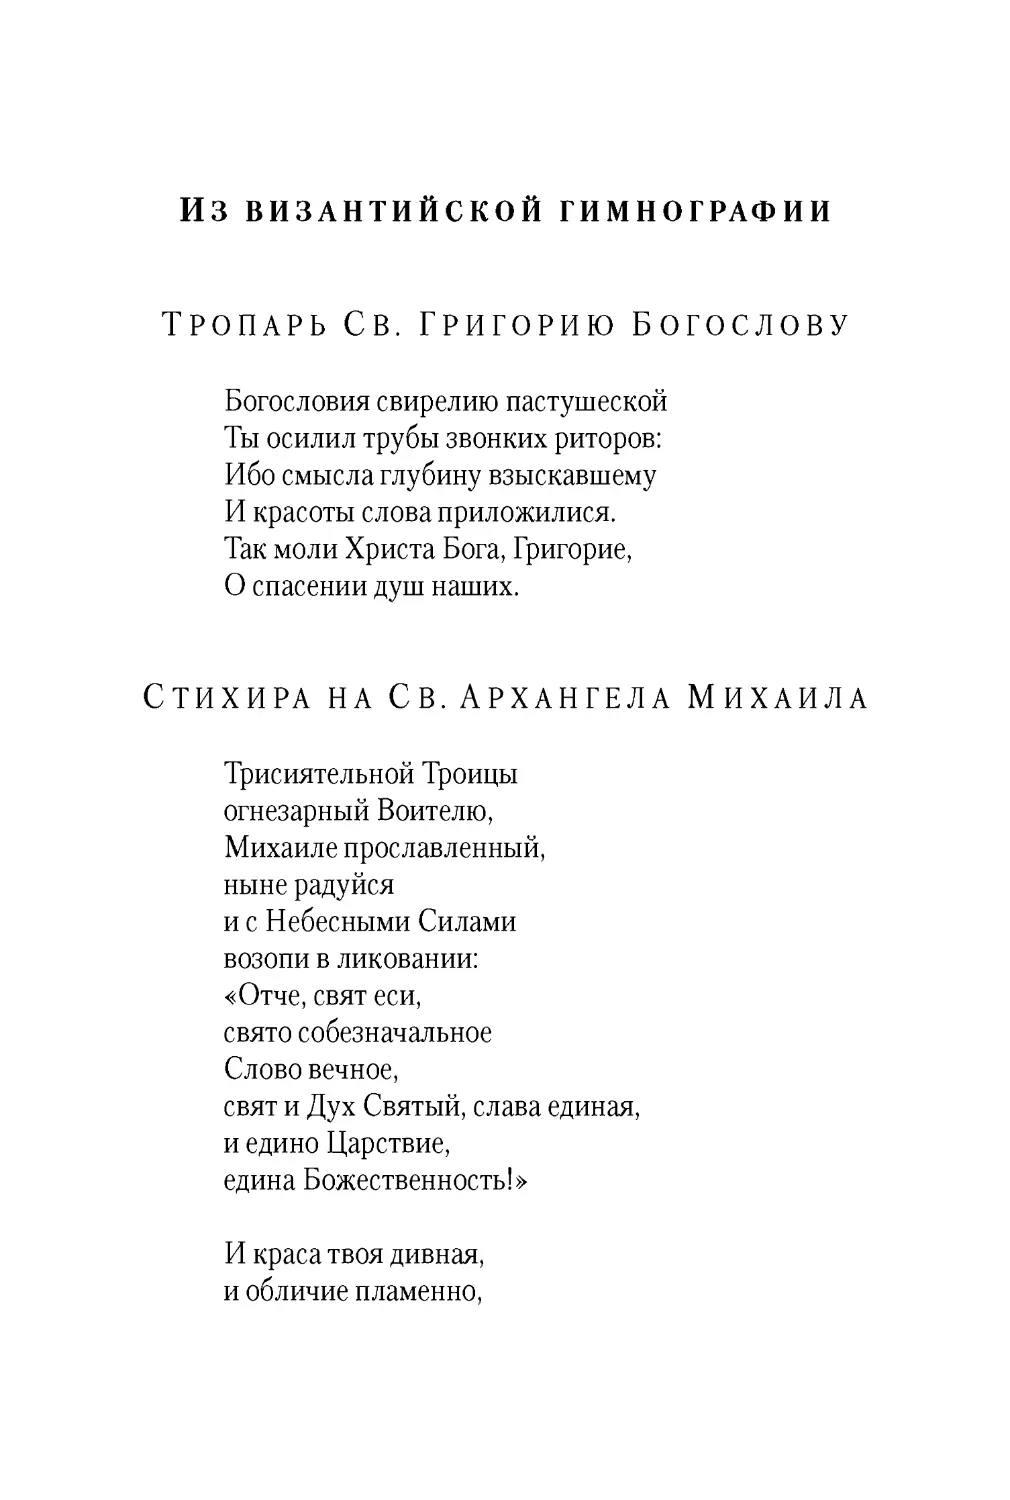 Из византийской гимнографии
Тропарь Св. Григорию Богослову
Стихира на Св. Архангела Михаила